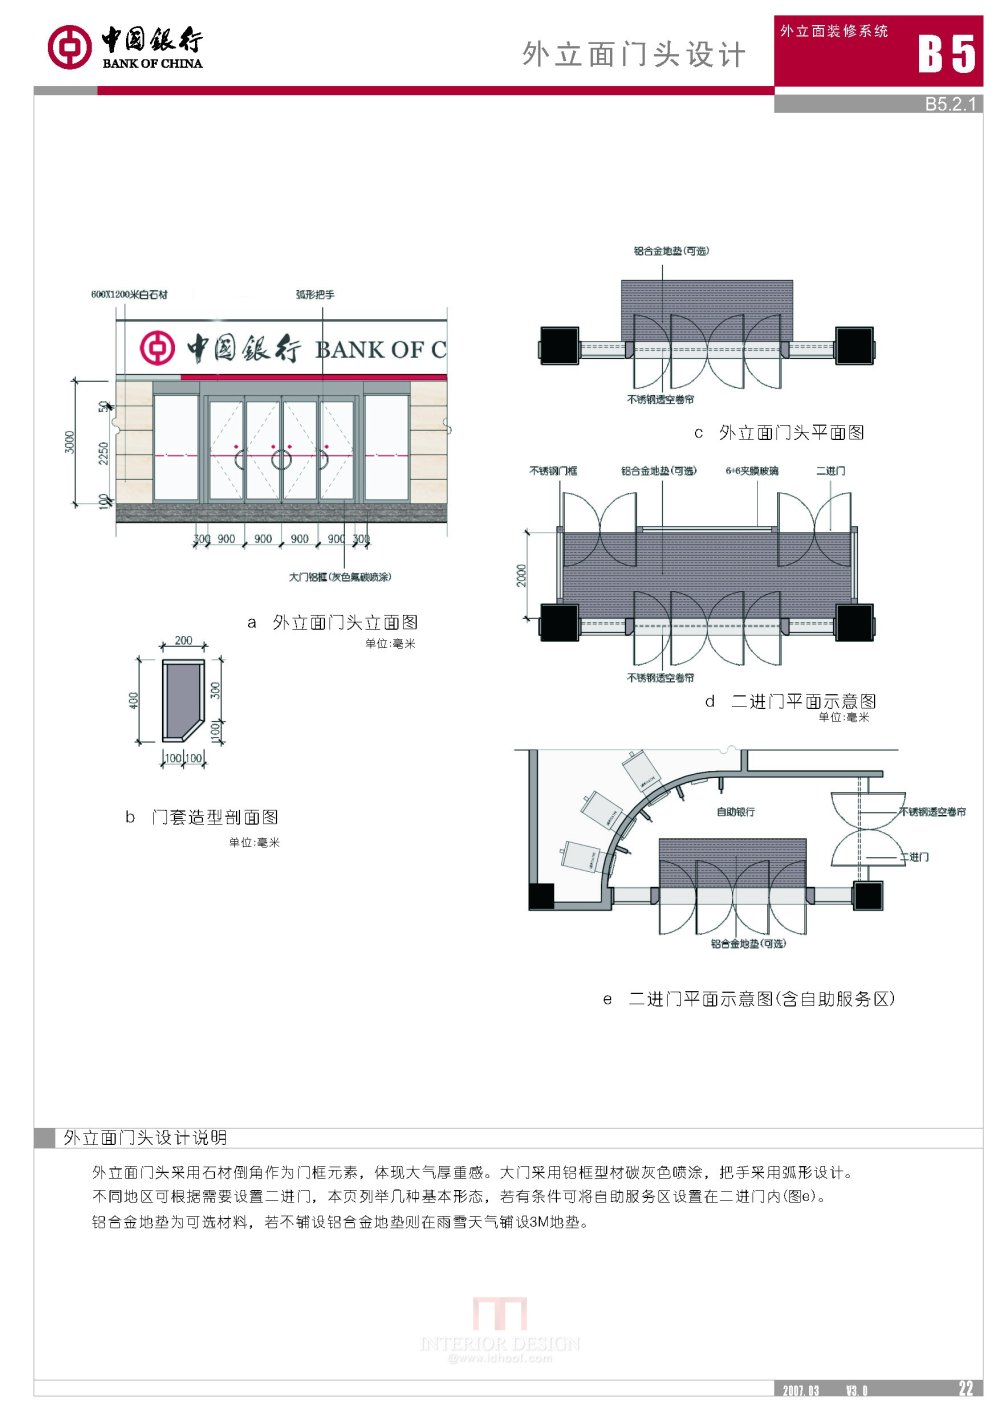 学会银行设计 中国银行形象标准化手册V3.0版_中国银行形象标准化手册V3.0版_页面_028.jpg